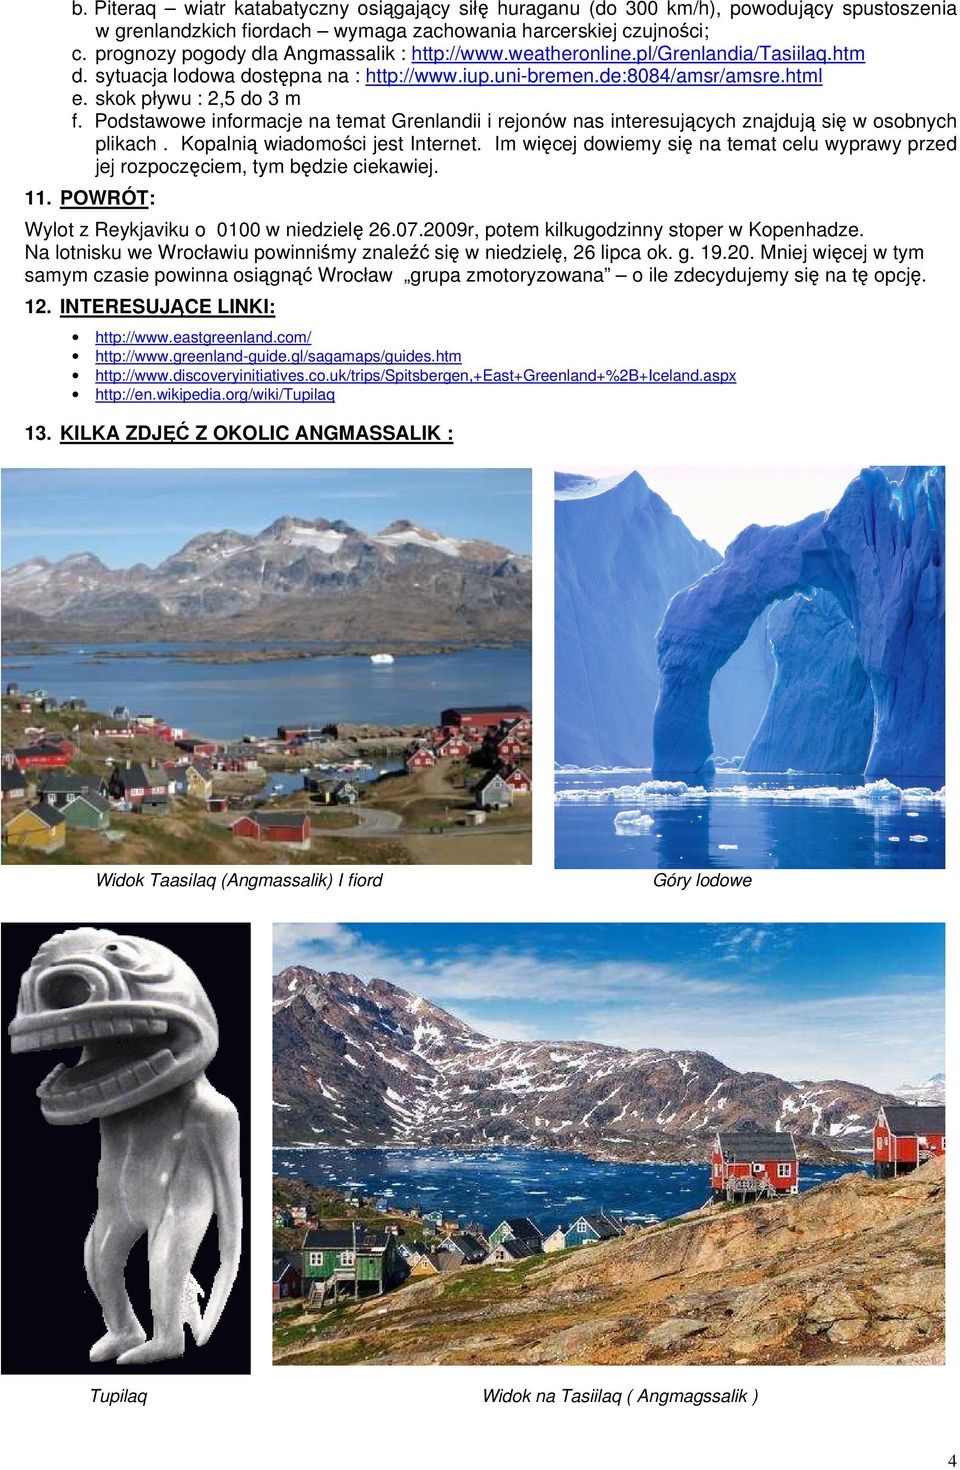 Podstawowe informacje na temat Grenlandii i rejonów nas interesujących znajdują się w osobnych plikach. Kopalnią wiadomości jest Internet.